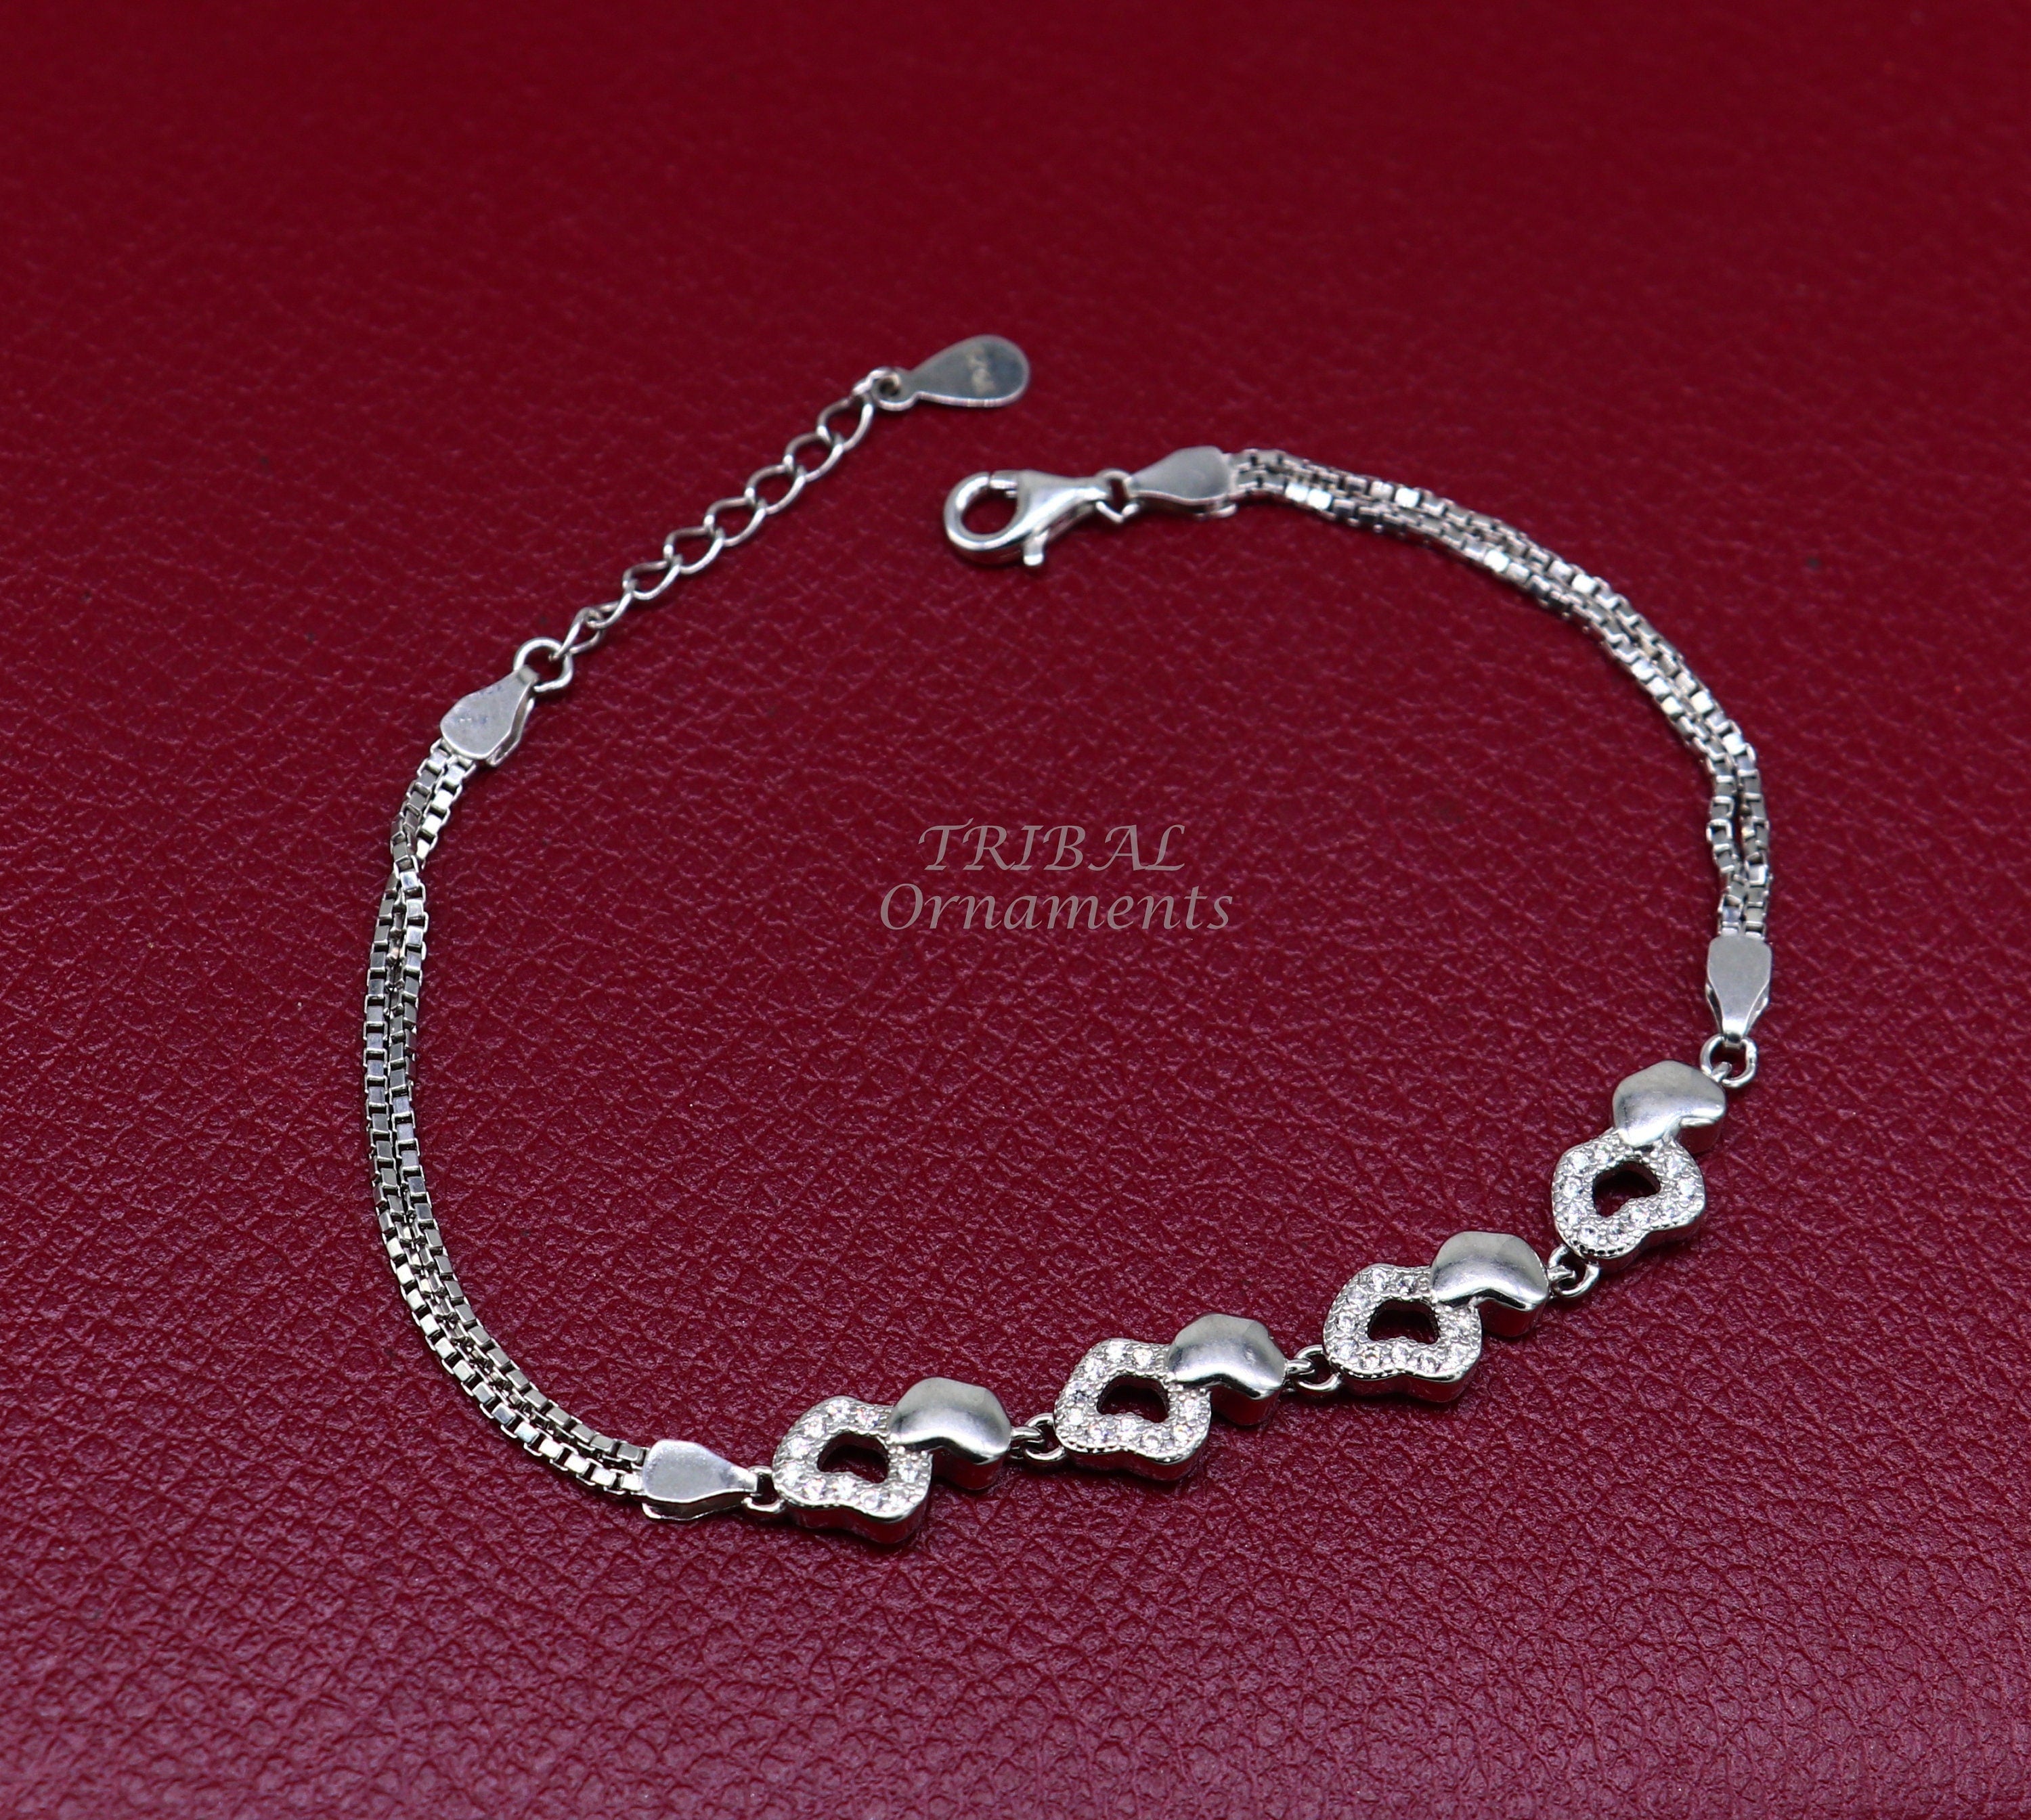 Women 925 Sterling Silver Charm Bracelet Jewelry - Walmart.com